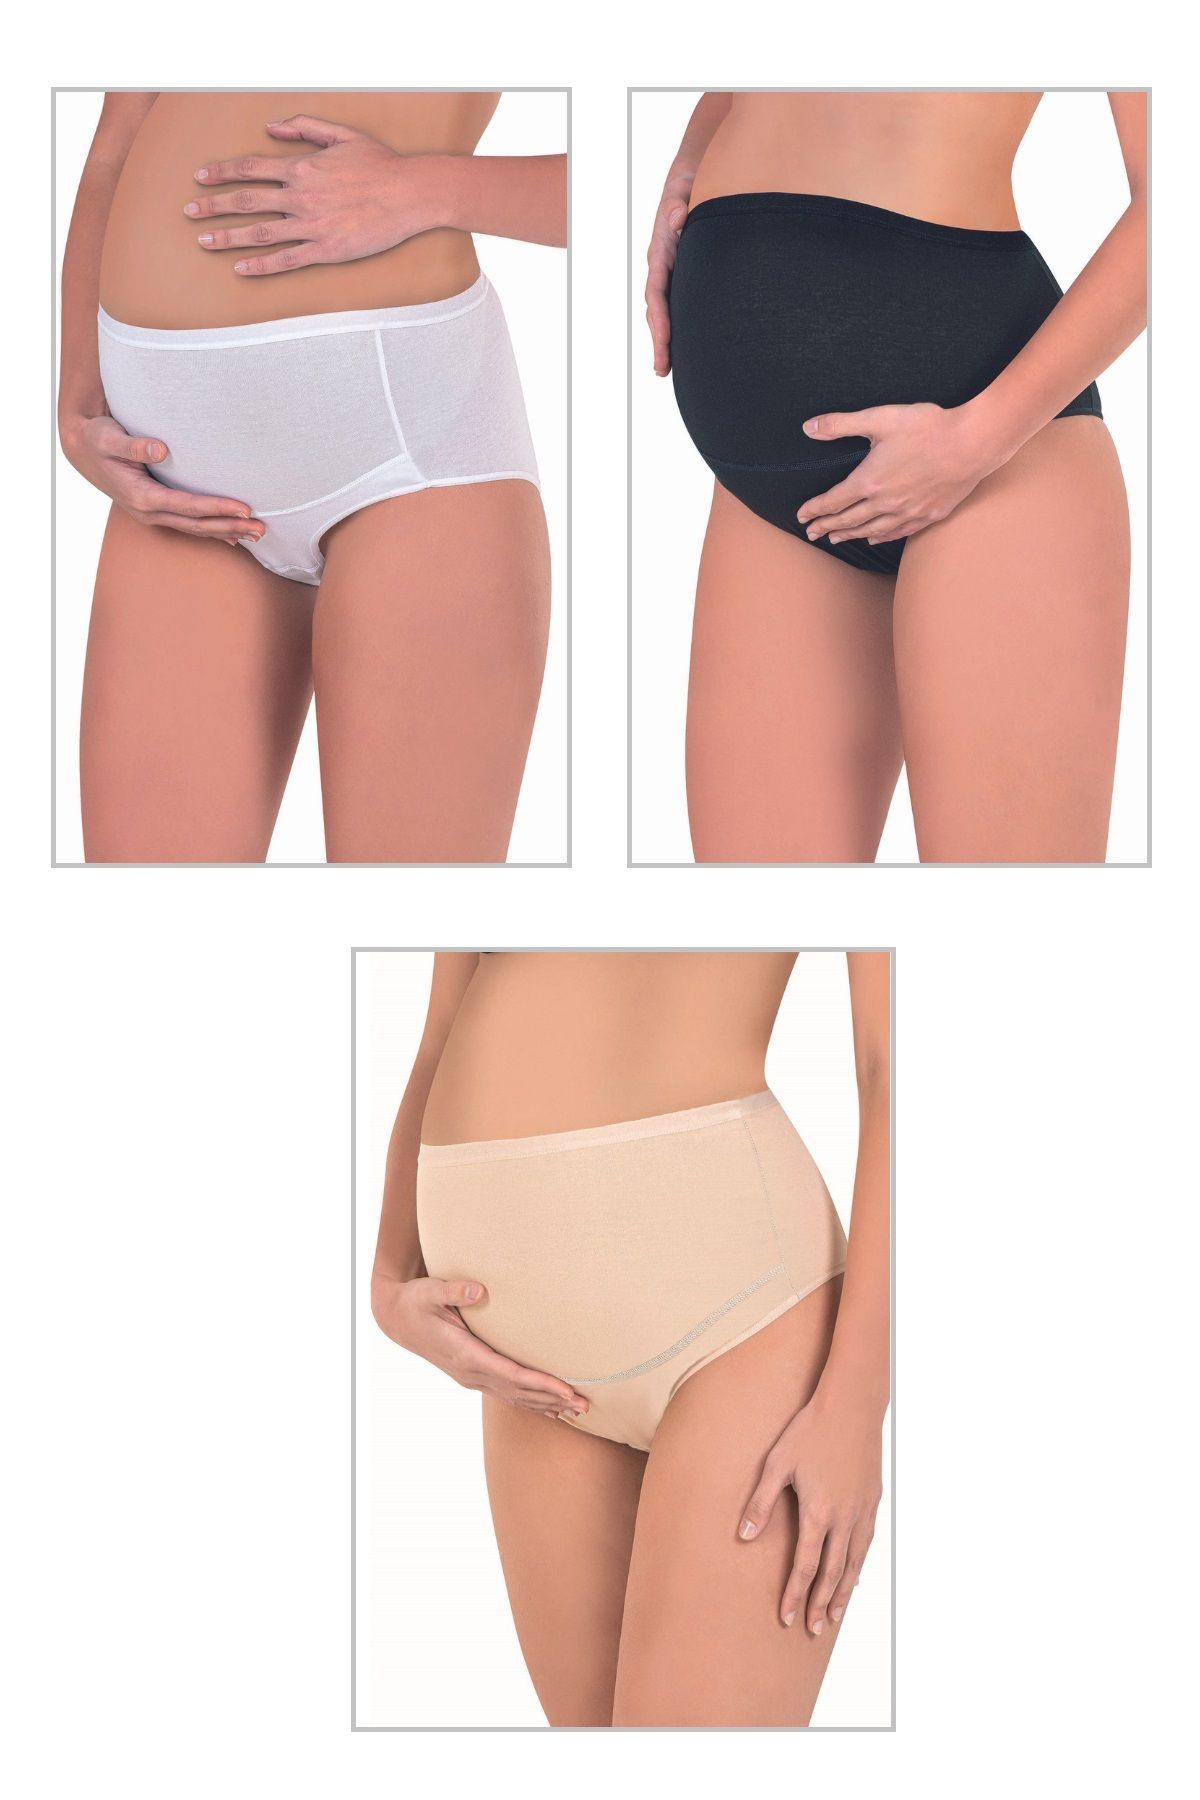 ÖZKAN underwear Özkan 23582 3'lü Paket Kadın Siyah Beyaz Ten Rengi Pamuklu Likralı Süprem Hamile Lohusa Yüksek Bel B